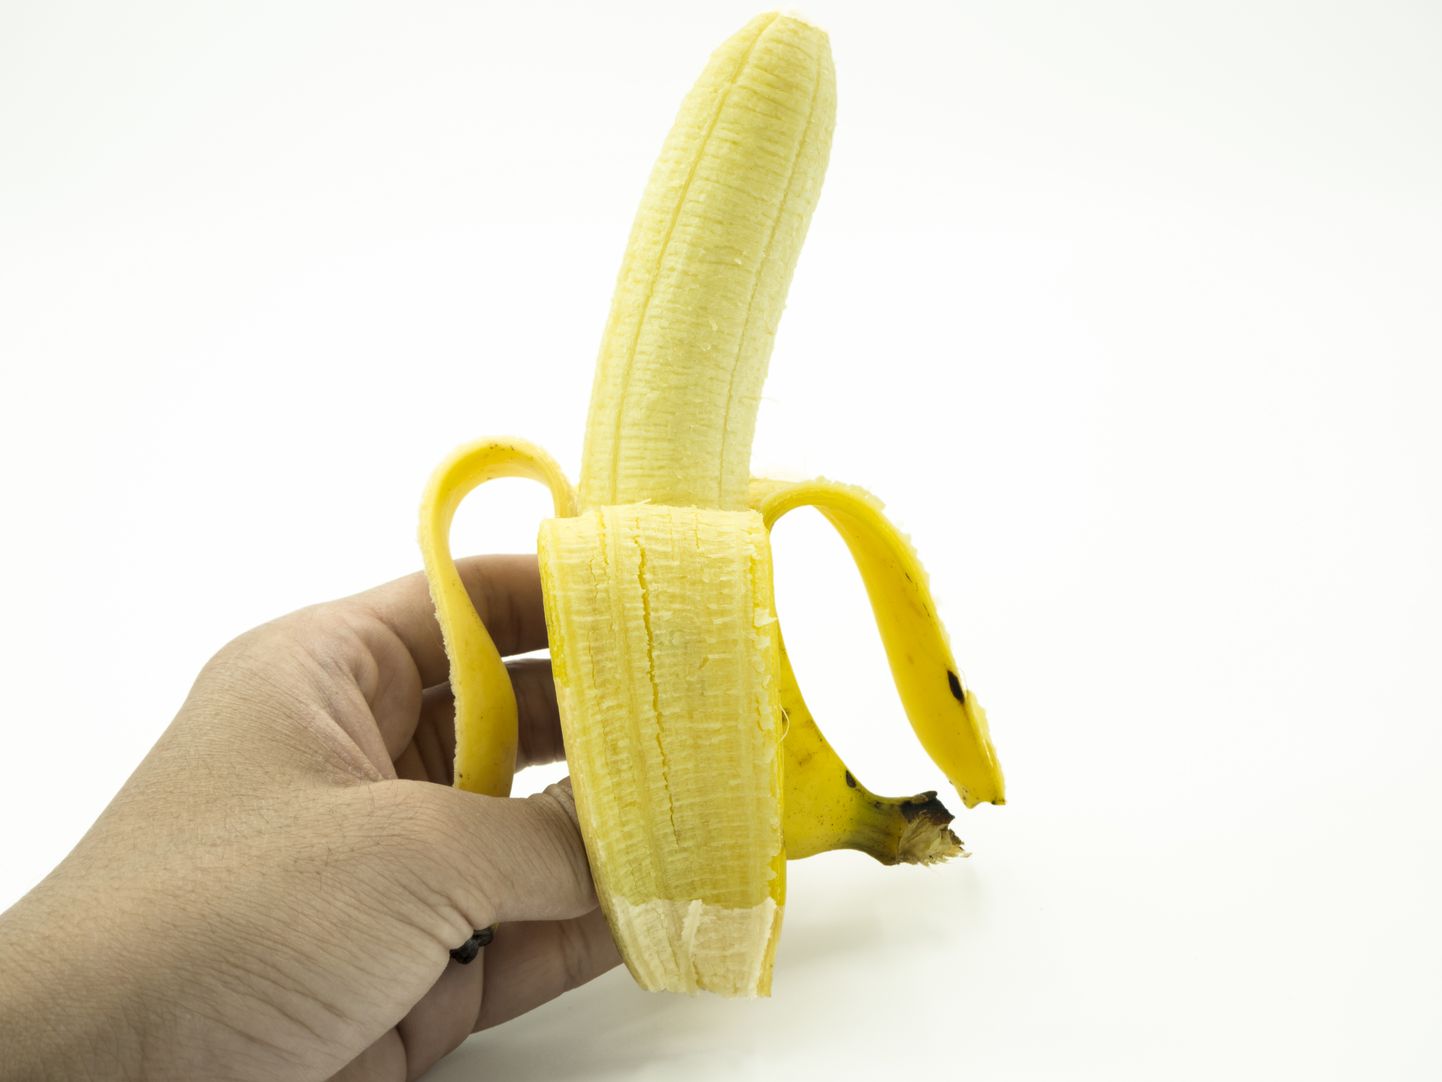 Banaan sisaldab kiudaineid, mis aitavad väljaheitel taas tahkemaks muutuda.